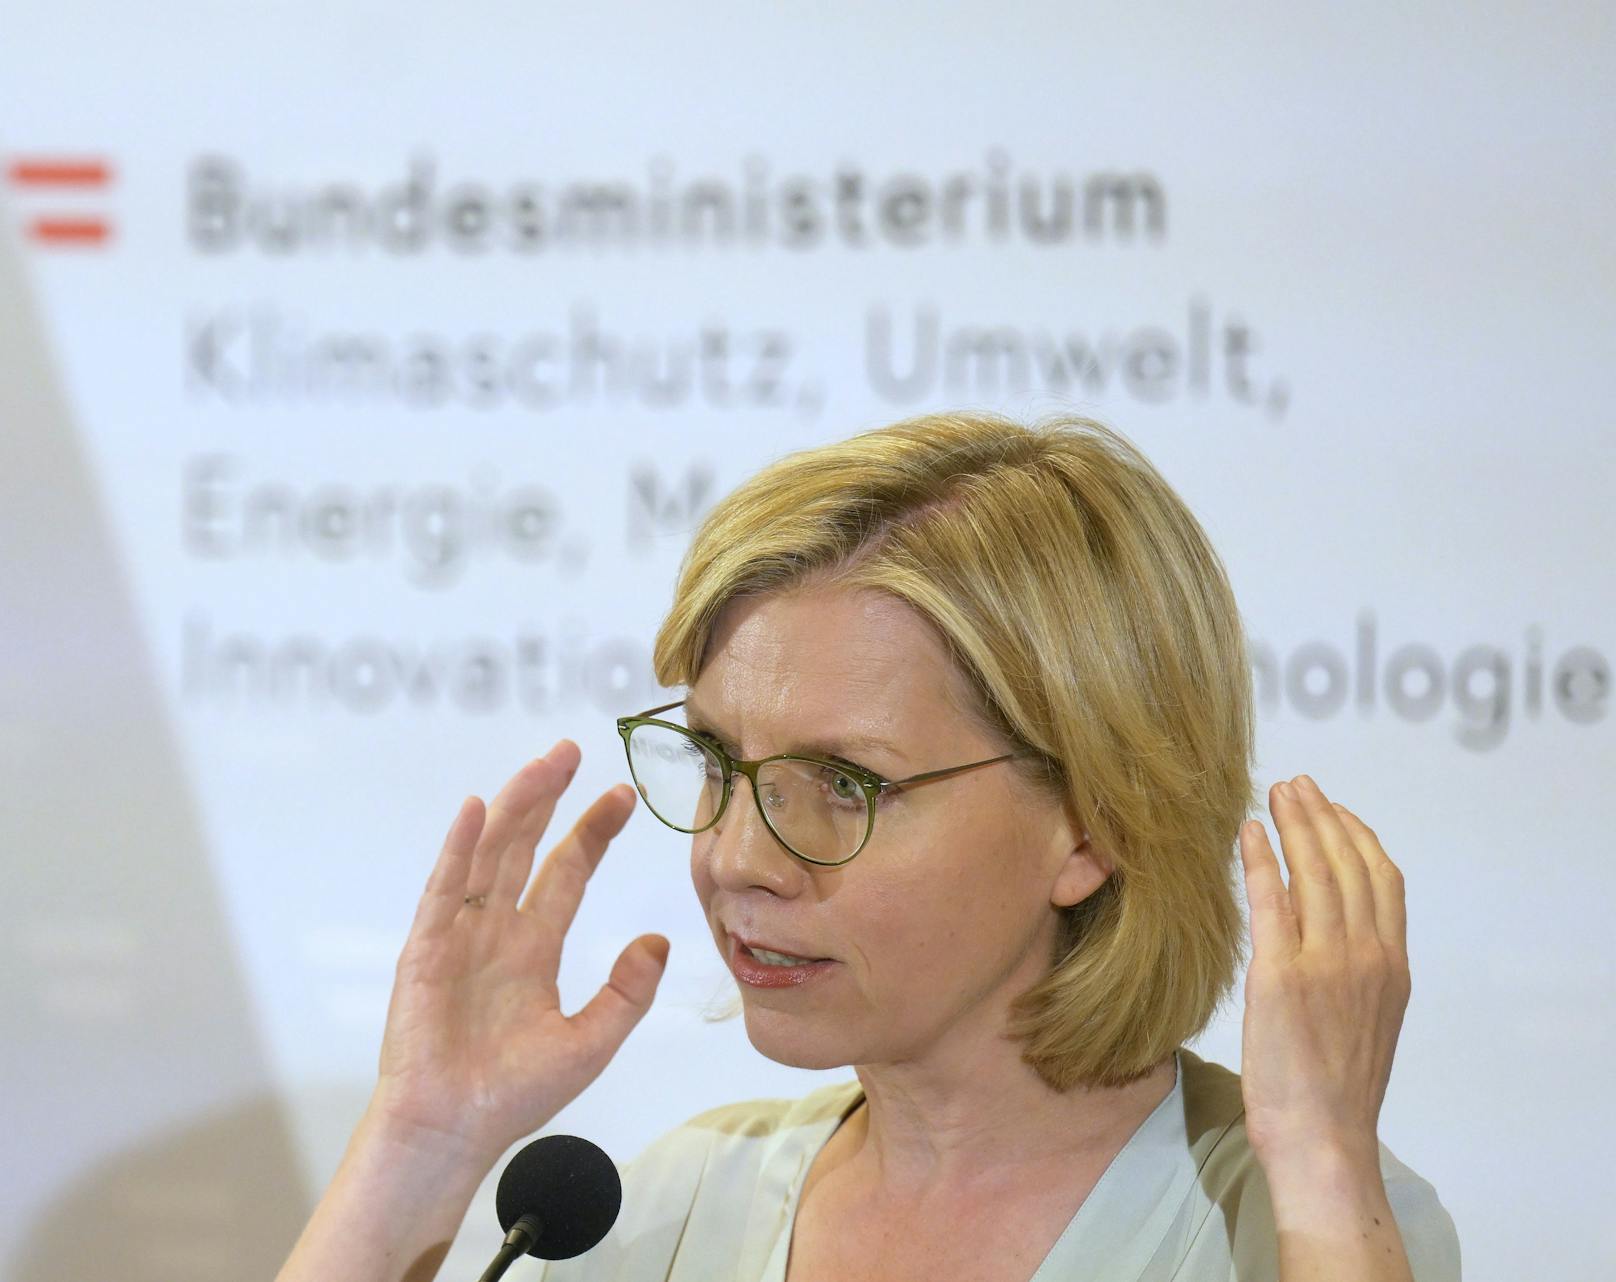 Energieministerin Leonore Gewessler (Grüne) vor einem Austausch mit Gasversorgern über die Vorbereitungen auf die Heizsaison 23/24 und Ausstiegspläne aus russischem Gas am 26. Juni 2023.